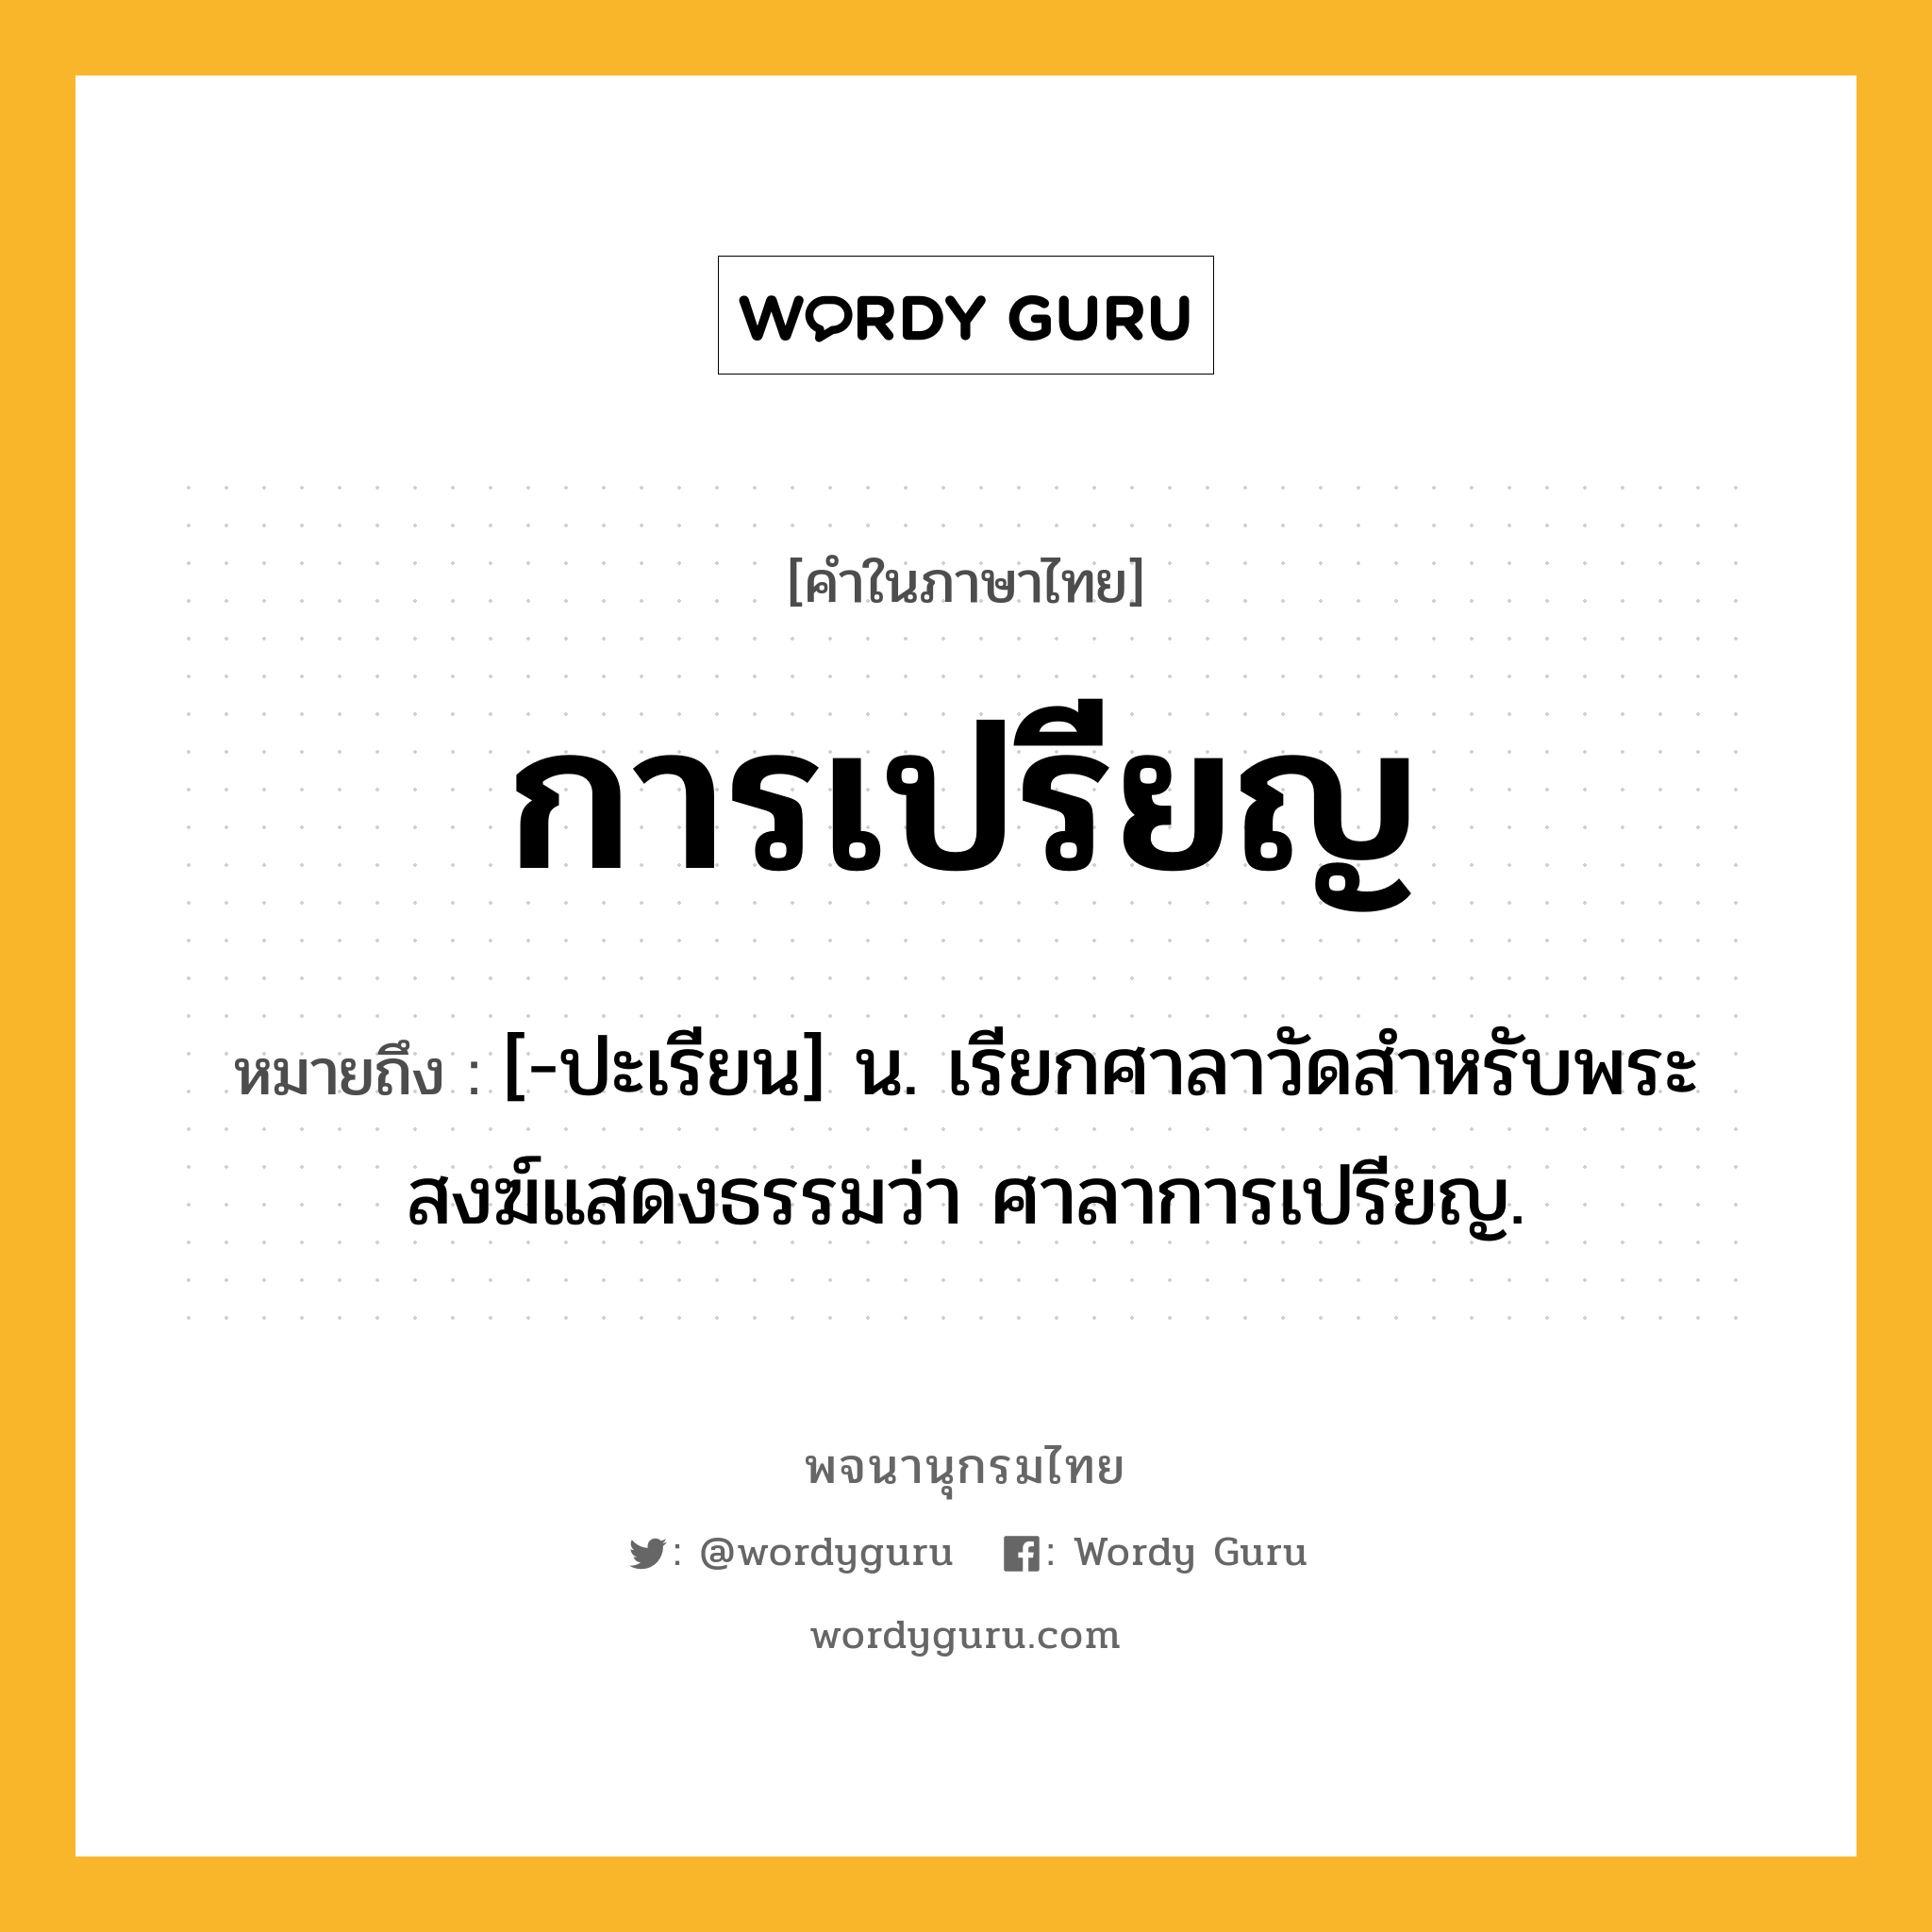 การเปรียญ ความหมาย หมายถึงอะไร?, คำในภาษาไทย การเปรียญ หมายถึง [-ปะเรียน] น. เรียกศาลาวัดสําหรับพระสงฆ์แสดงธรรมว่า ศาลาการเปรียญ.